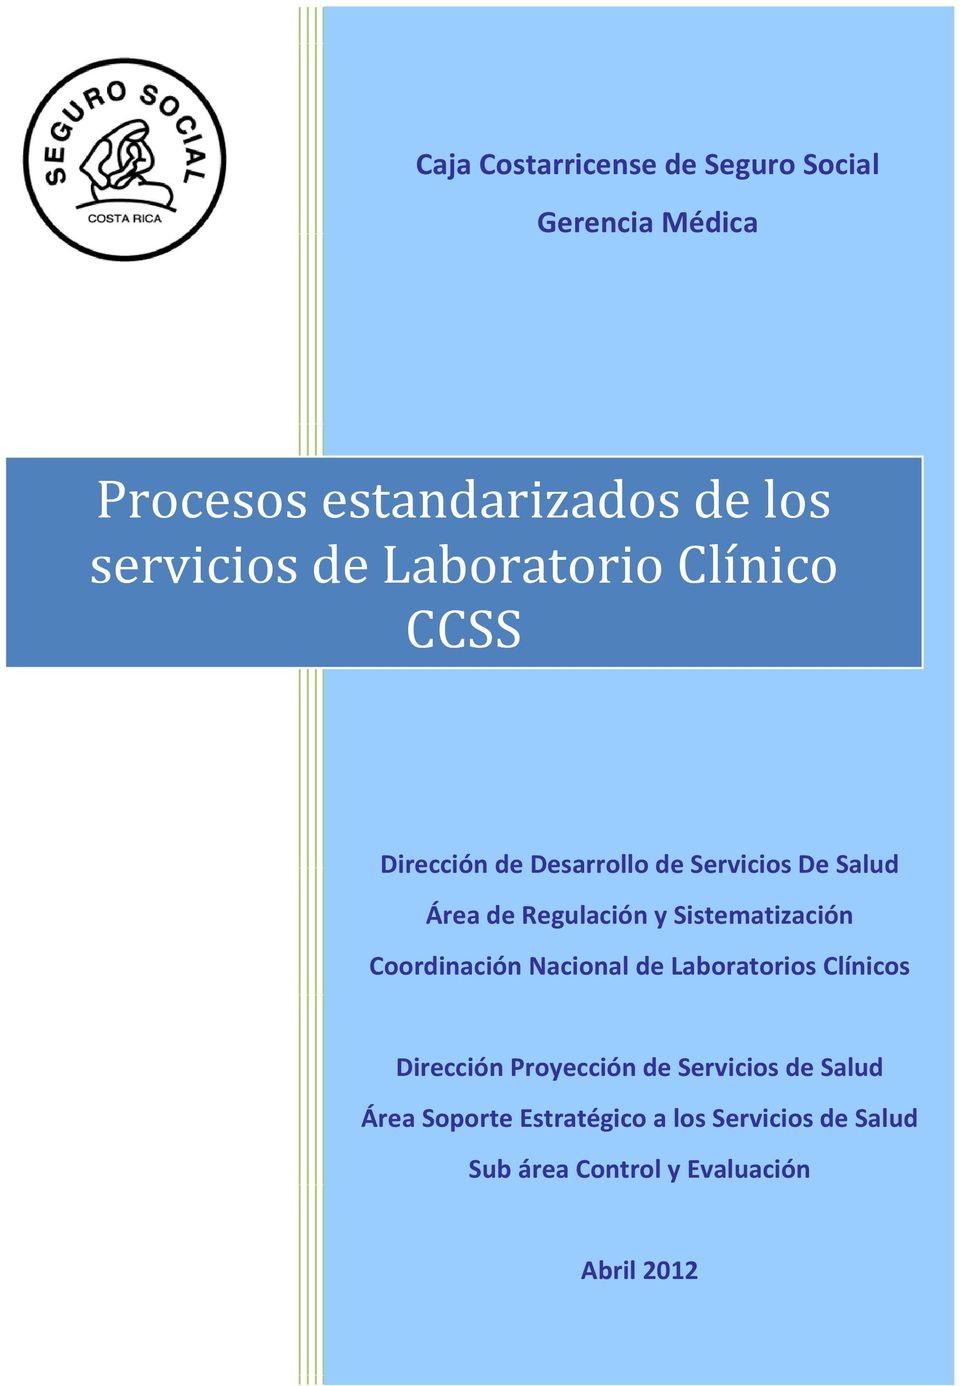 Sistematización Coordinación Nacional de Laboratorios Clínicos Dirección Proyección de Servicios